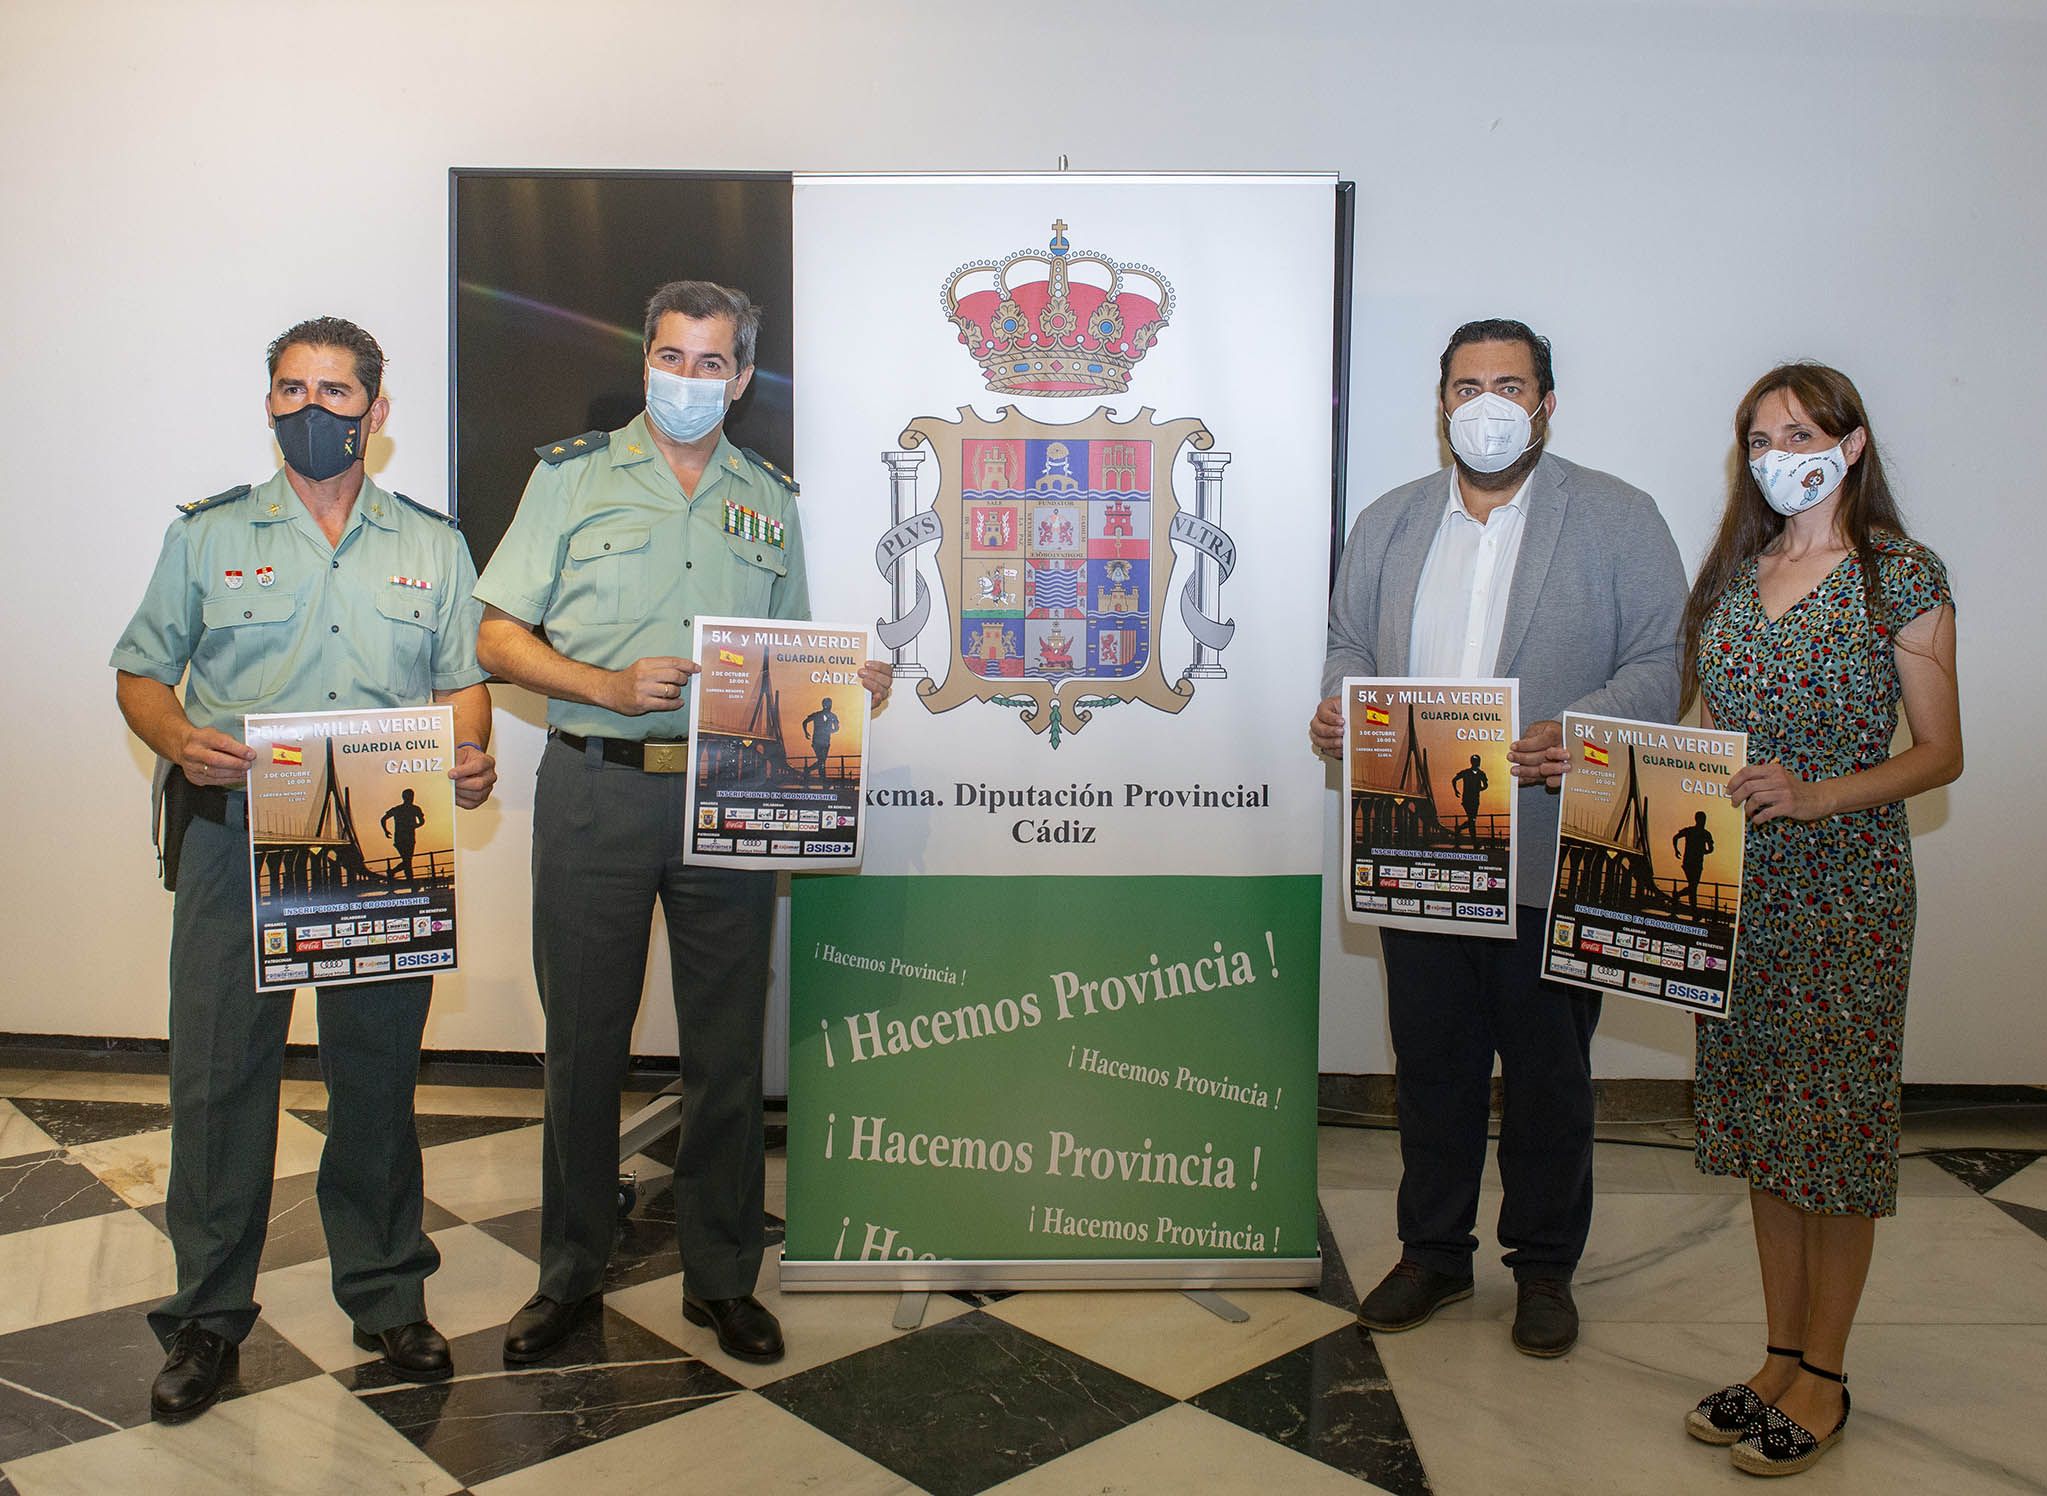 Presentación de la VI Milla Verde organizada por el Cuerpo de la Guardia Civil de Cádiz. 